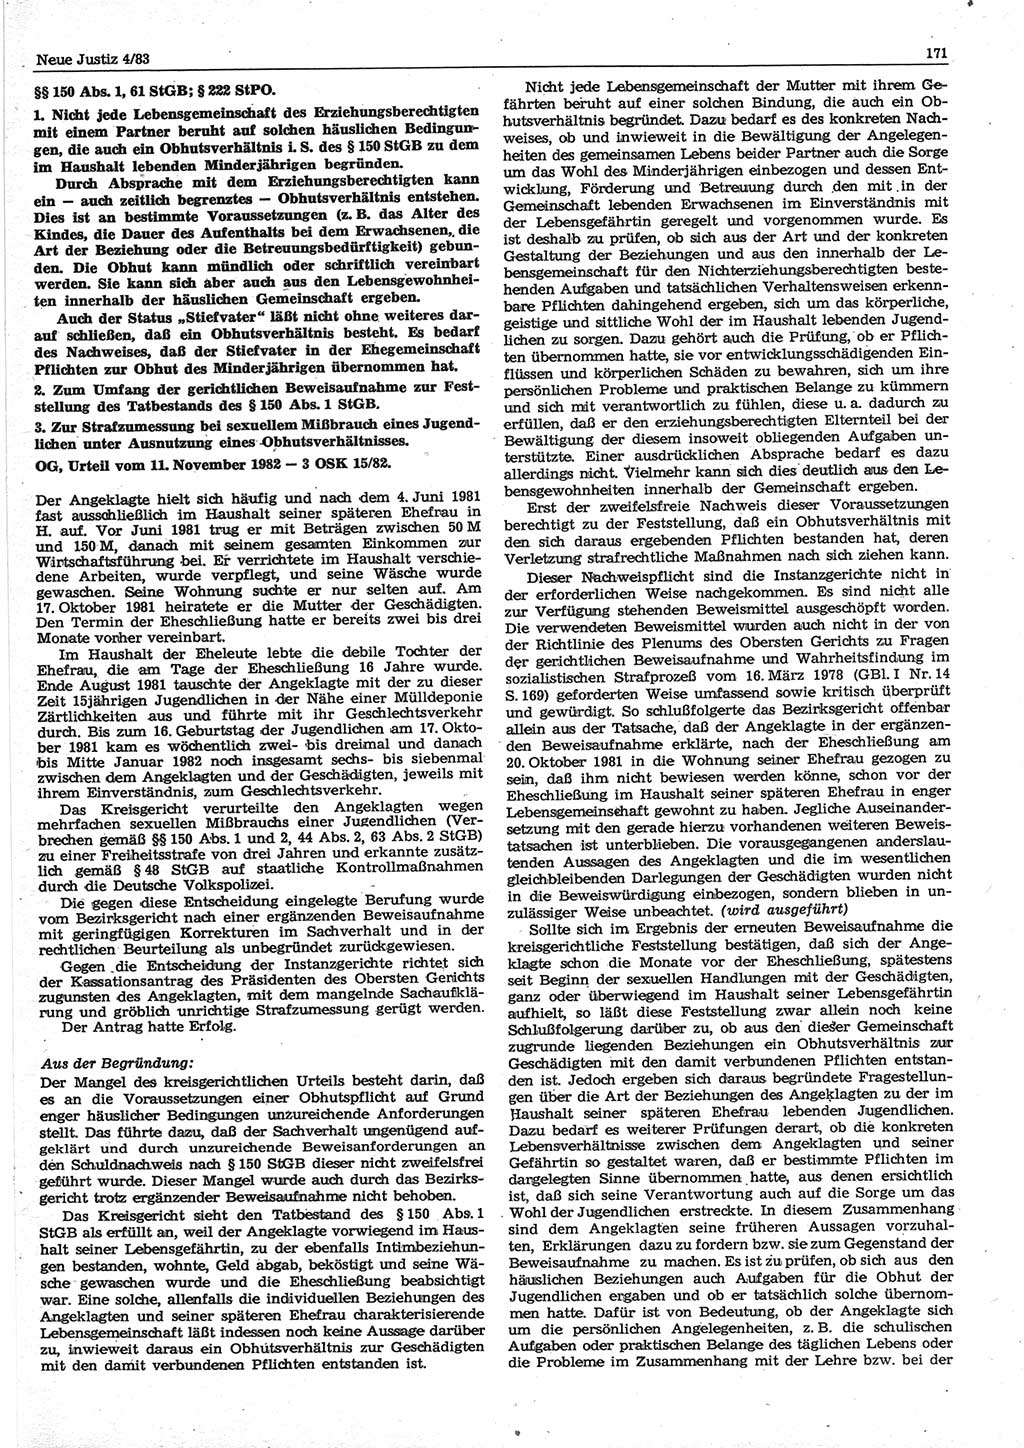 Neue Justiz (NJ), Zeitschrift für sozialistisches Recht und Gesetzlichkeit [Deutsche Demokratische Republik (DDR)], 37. Jahrgang 1983, Seite 171 (NJ DDR 1983, S. 171)